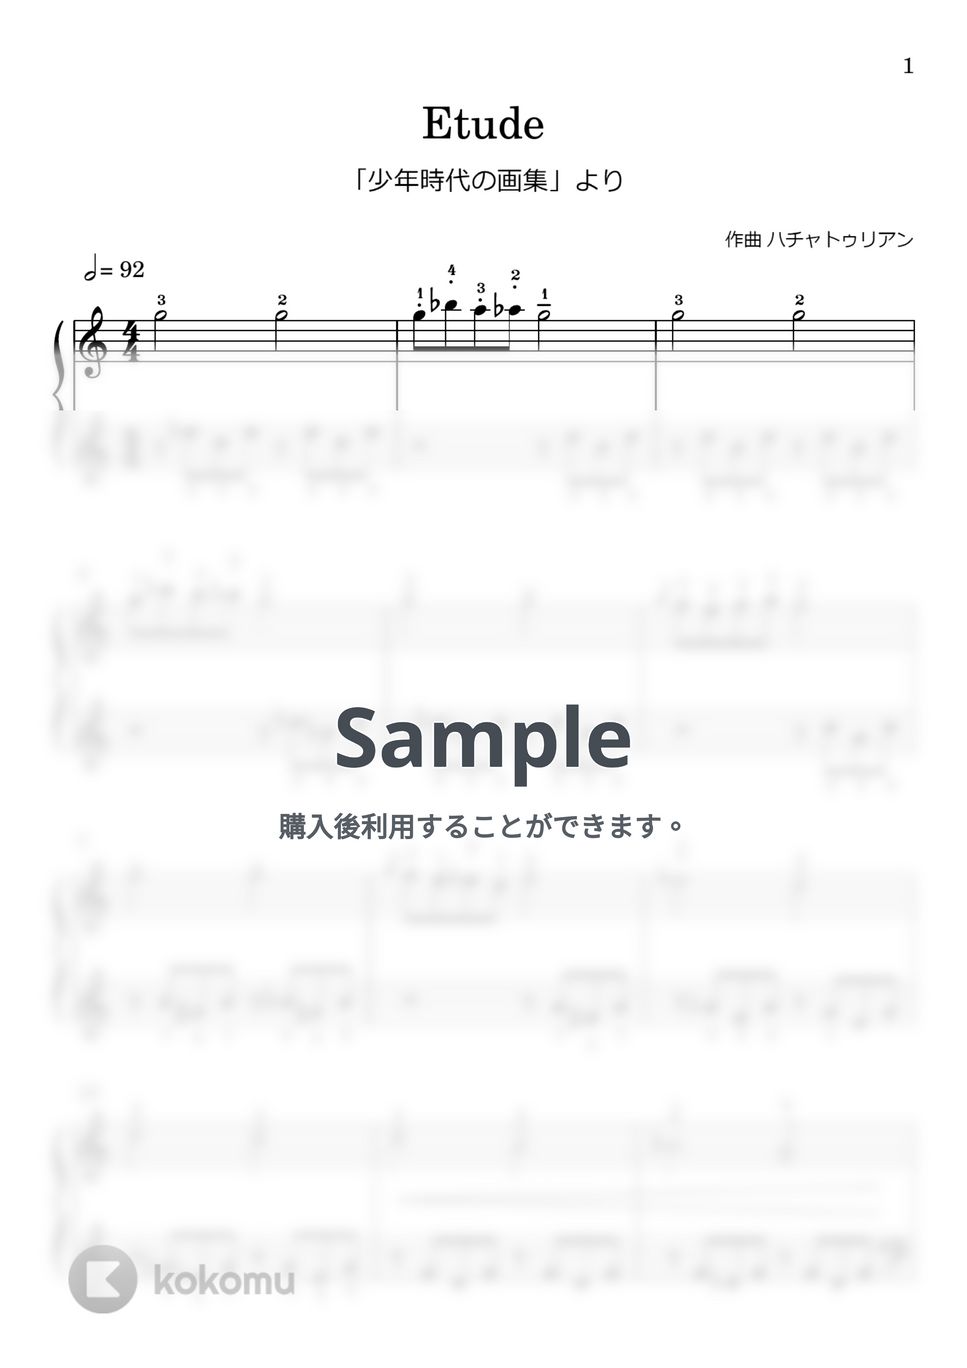 ハチャトゥリアン - エチュード (｢少年時代の画集｣ 第5曲) by Watanabe